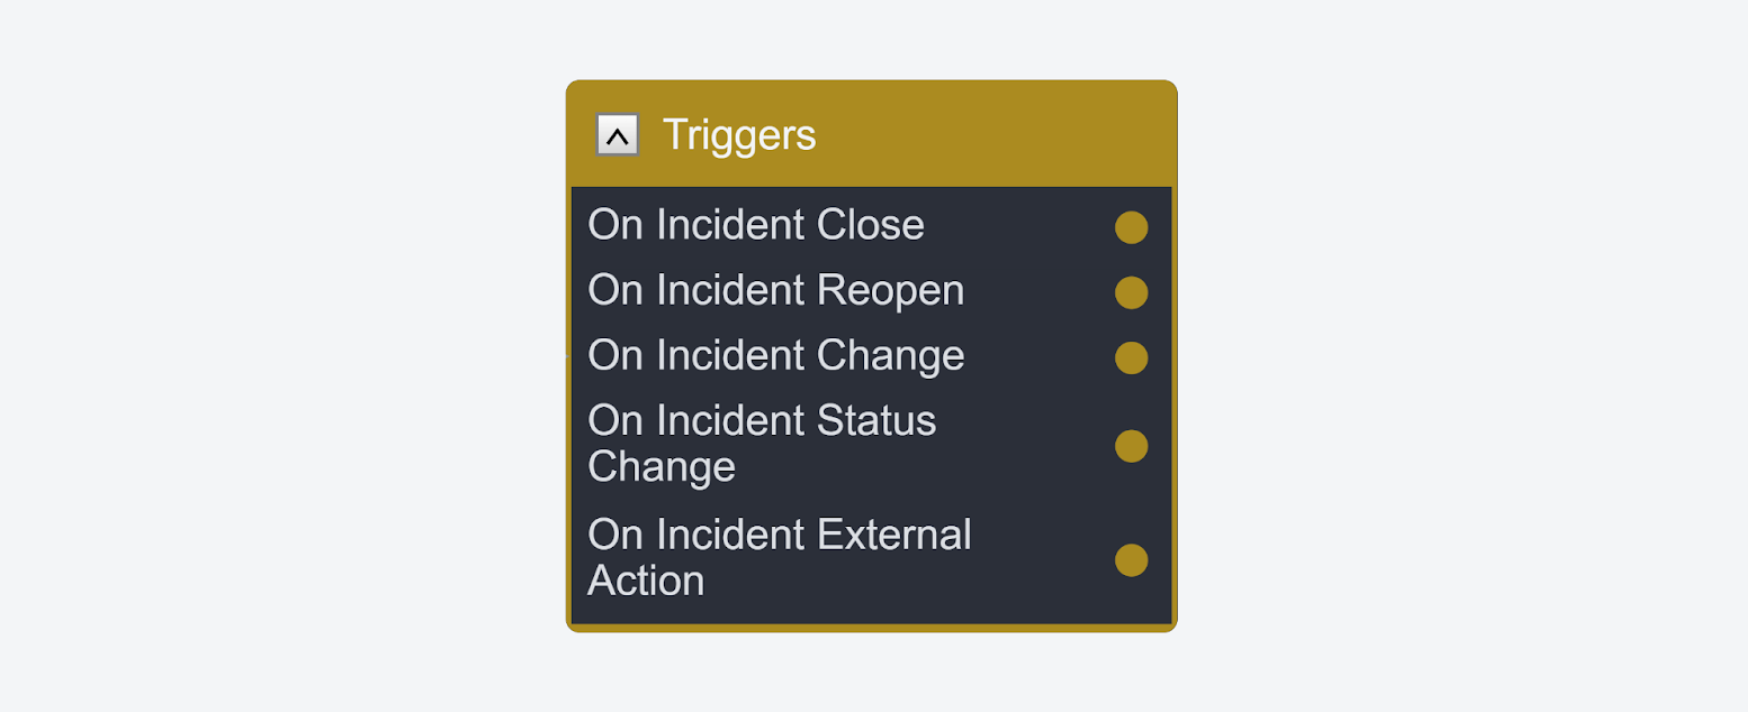 Incident External Action trigger in Smart SOAR 